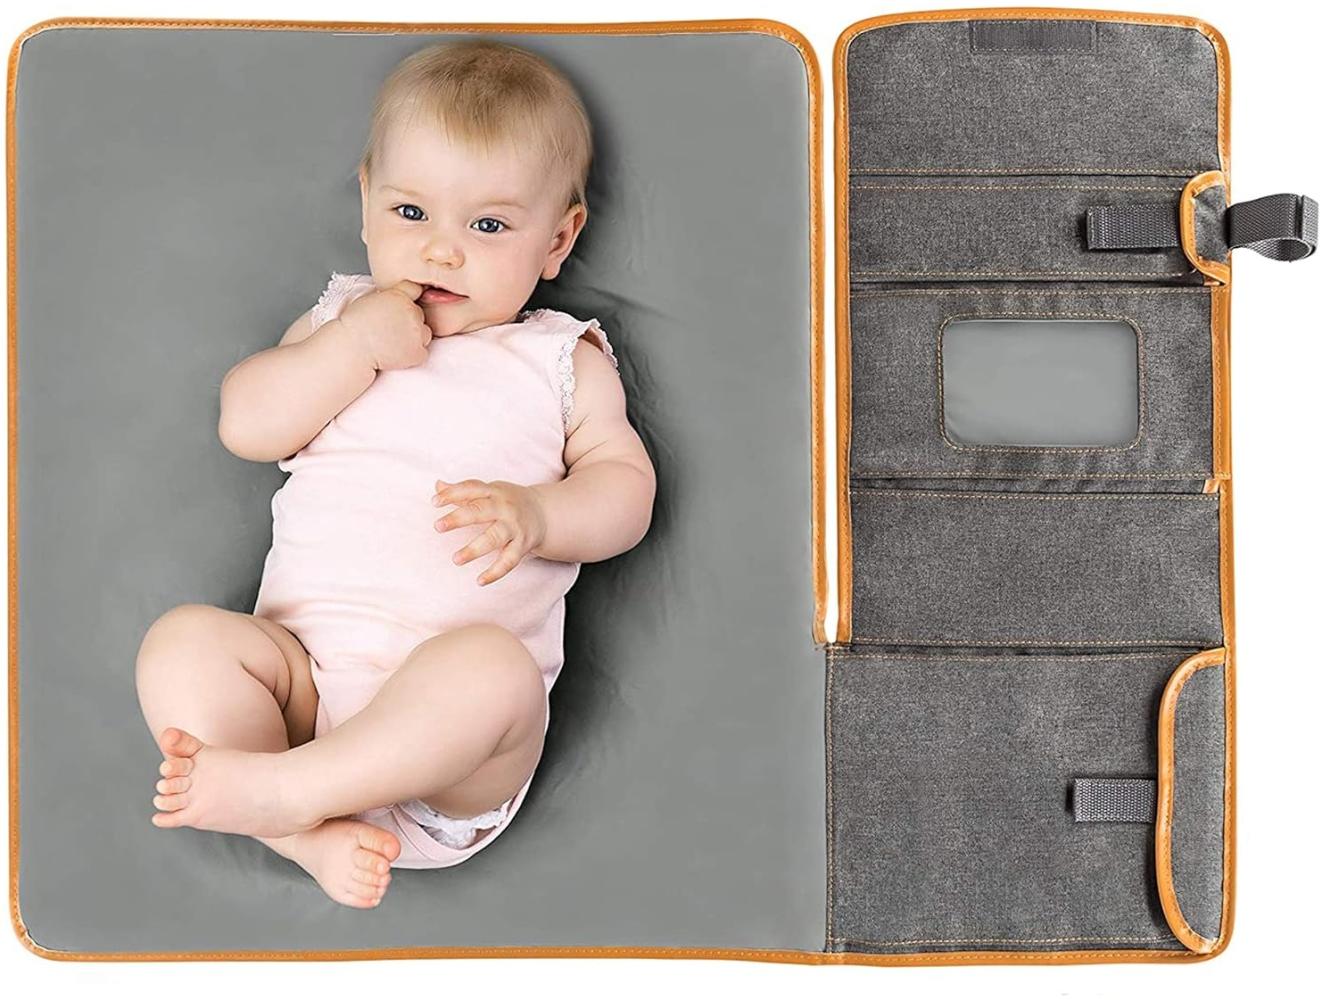 Zamboo Tragbare Baby Wickelunterlage für unterwegs - Faltbare Reise Wickeltasche mit abwaschbarer Wickelauflage 60x50 cm und Befestigung für Kinderwagen - Melange Grau Bild 1